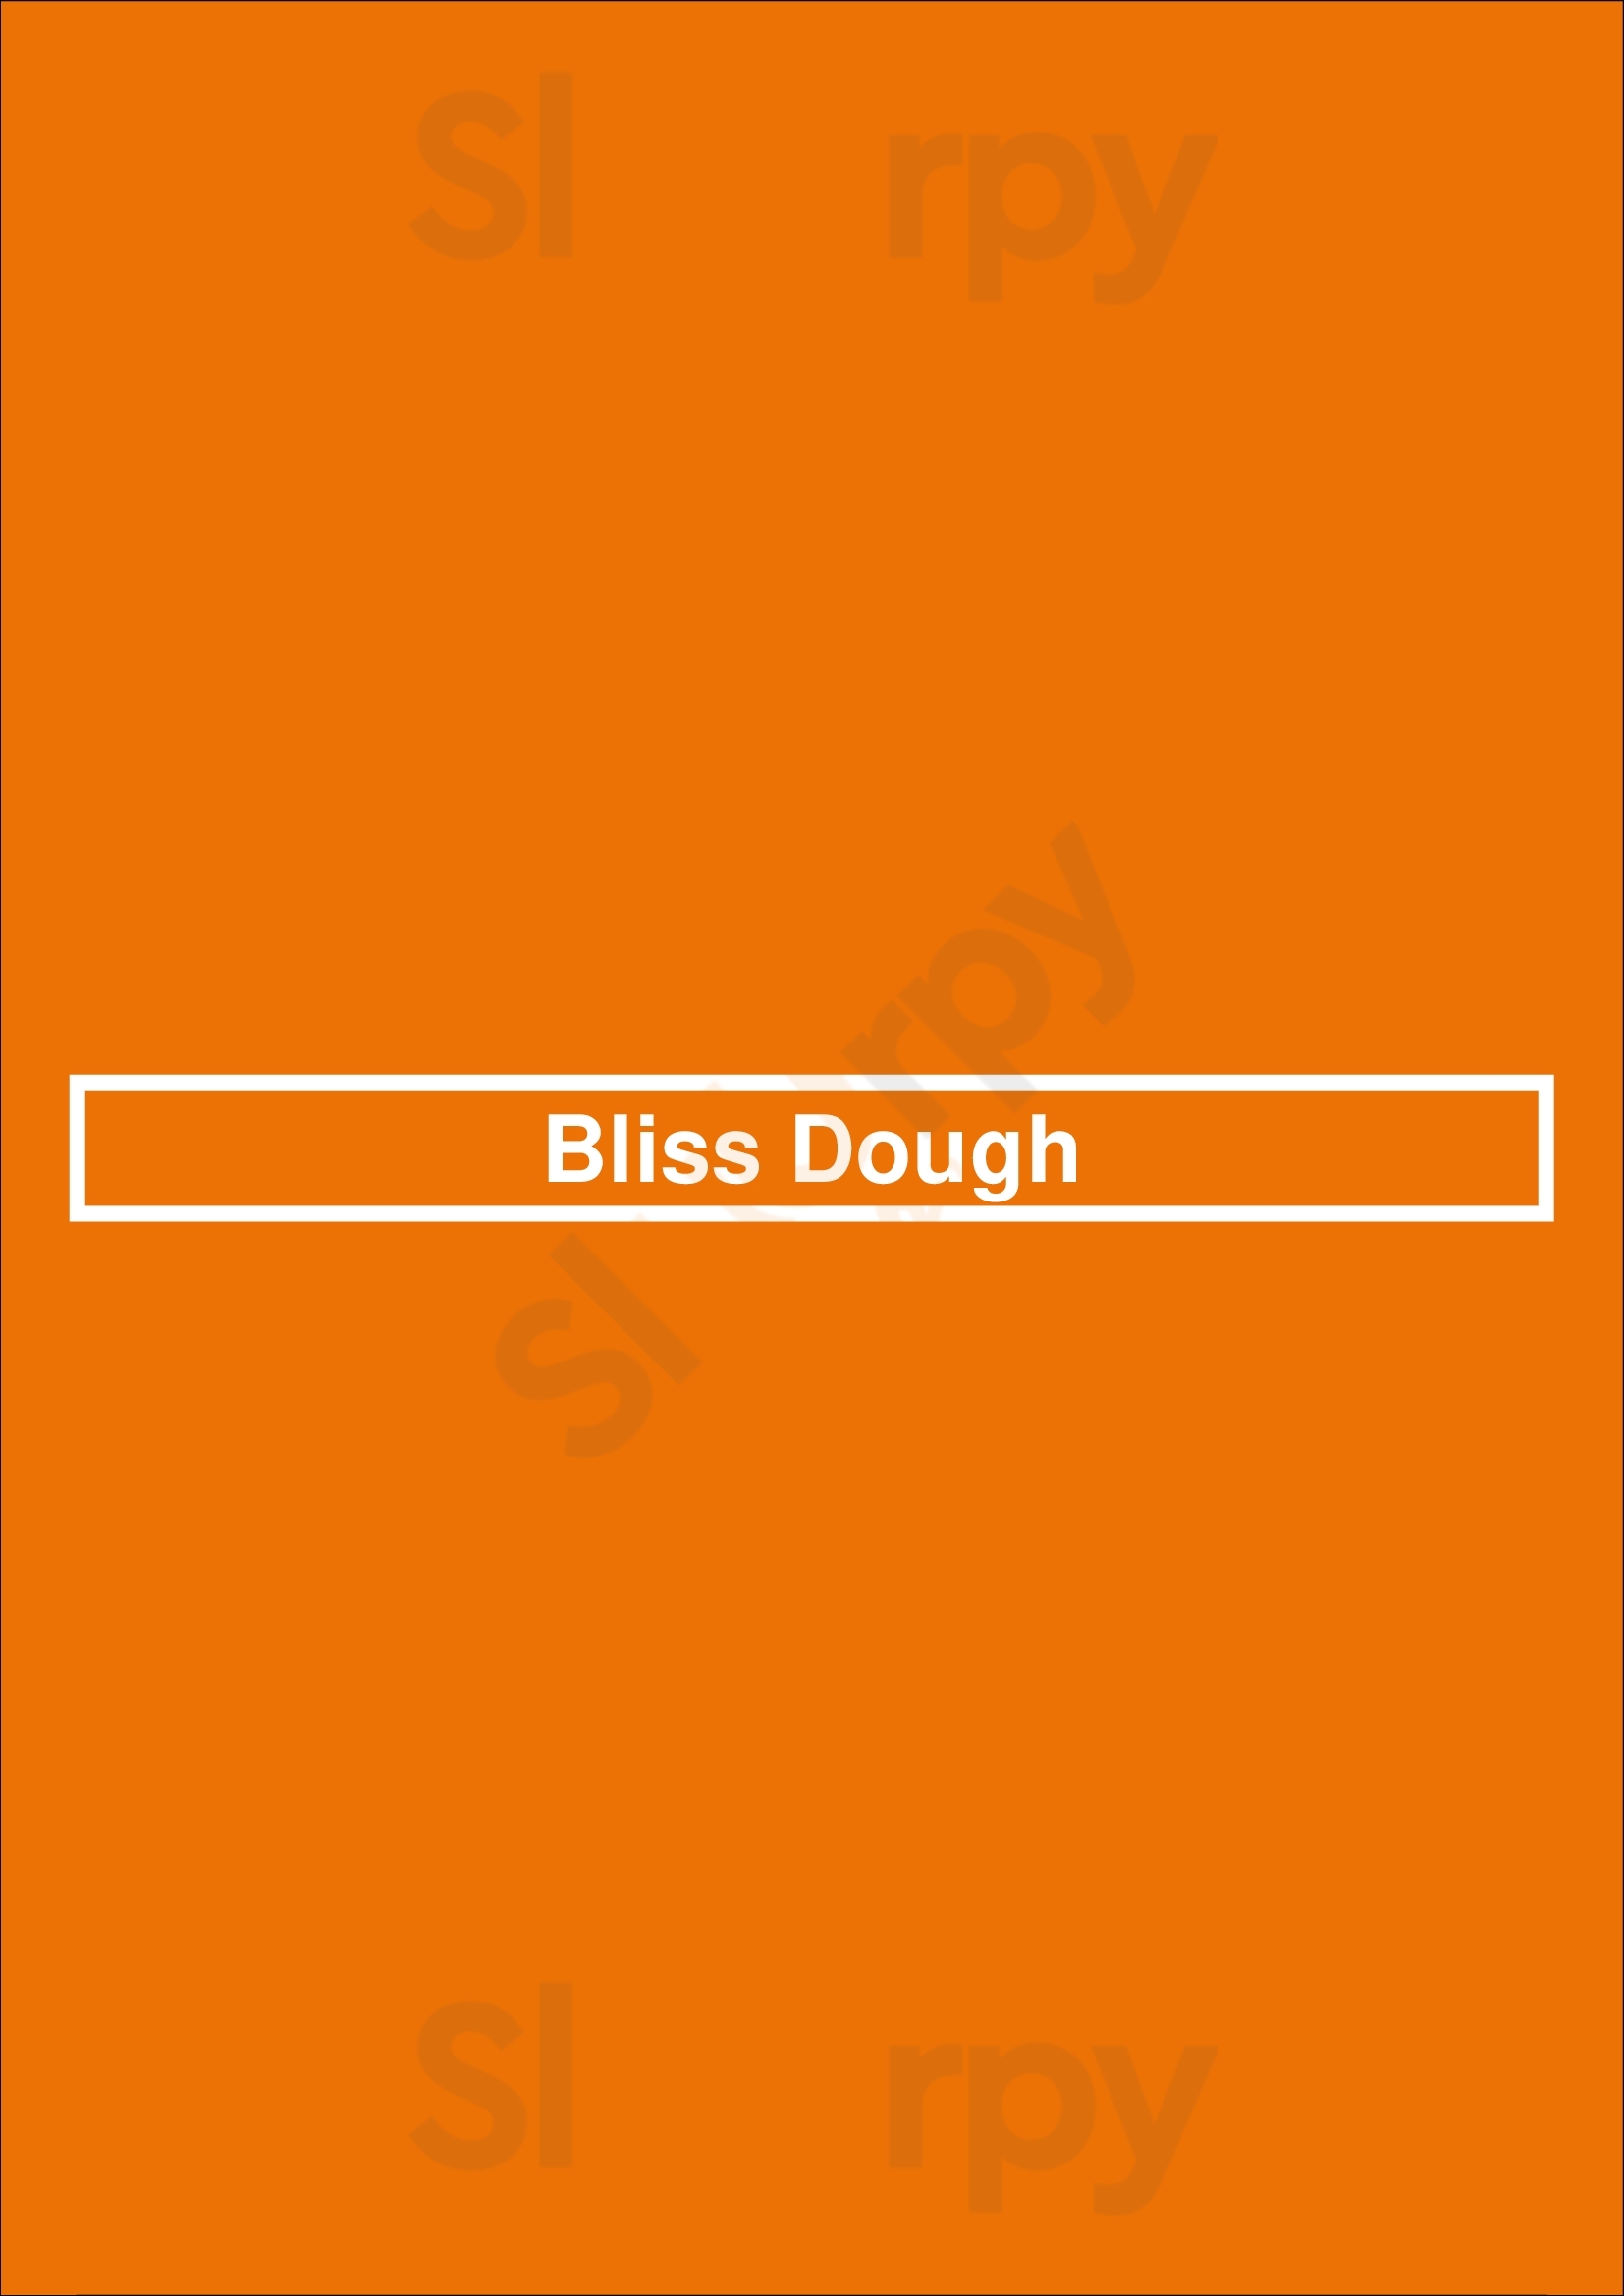 Bliss Dough Guelph Menu - 1